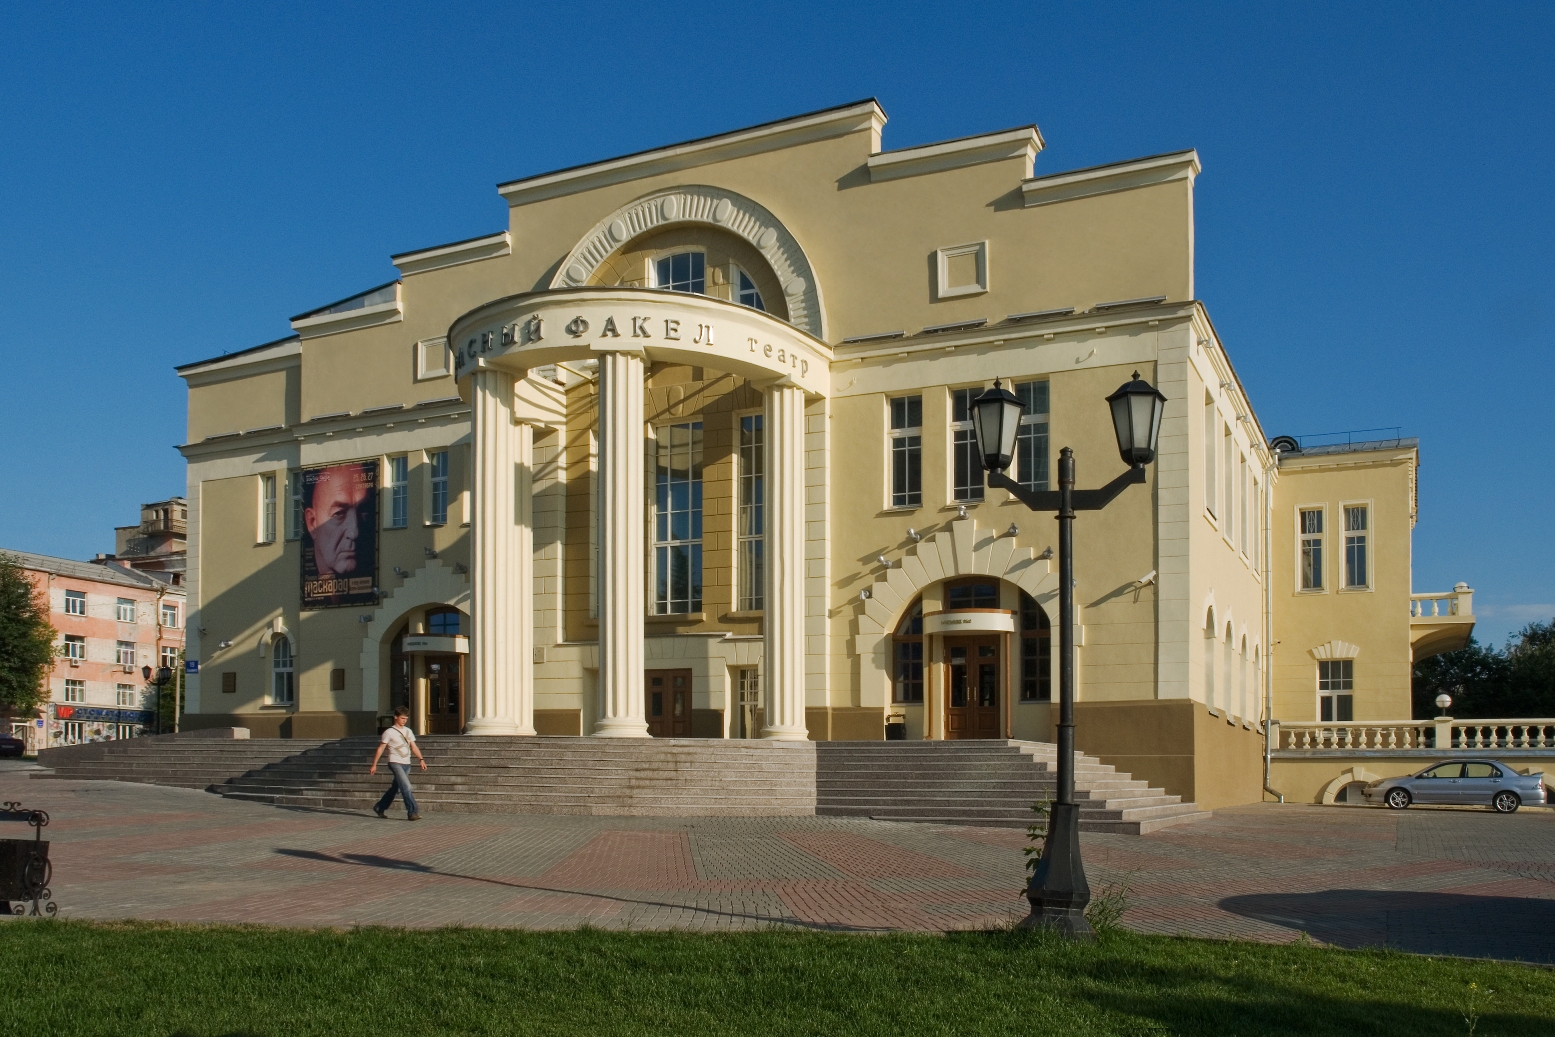 Новосибирский государственный академический драматический театр «Красный факел»